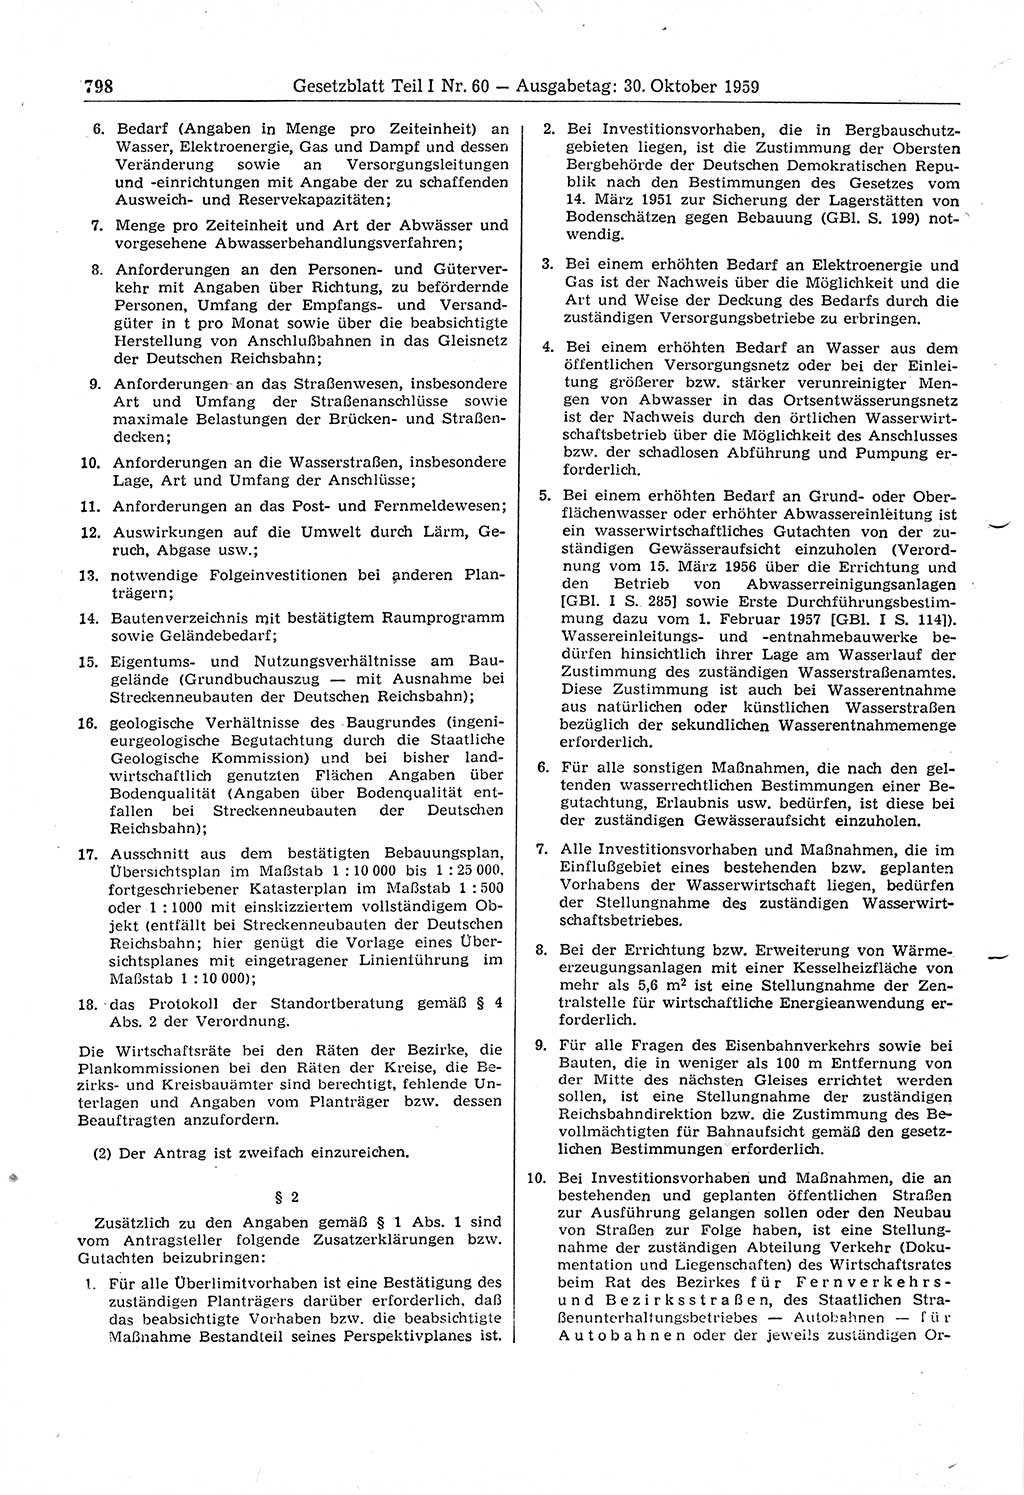 Gesetzblatt (GBl.) der Deutschen Demokratischen Republik (DDR) Teil Ⅰ 1959, Seite 798 (GBl. DDR Ⅰ 1959, S. 798)